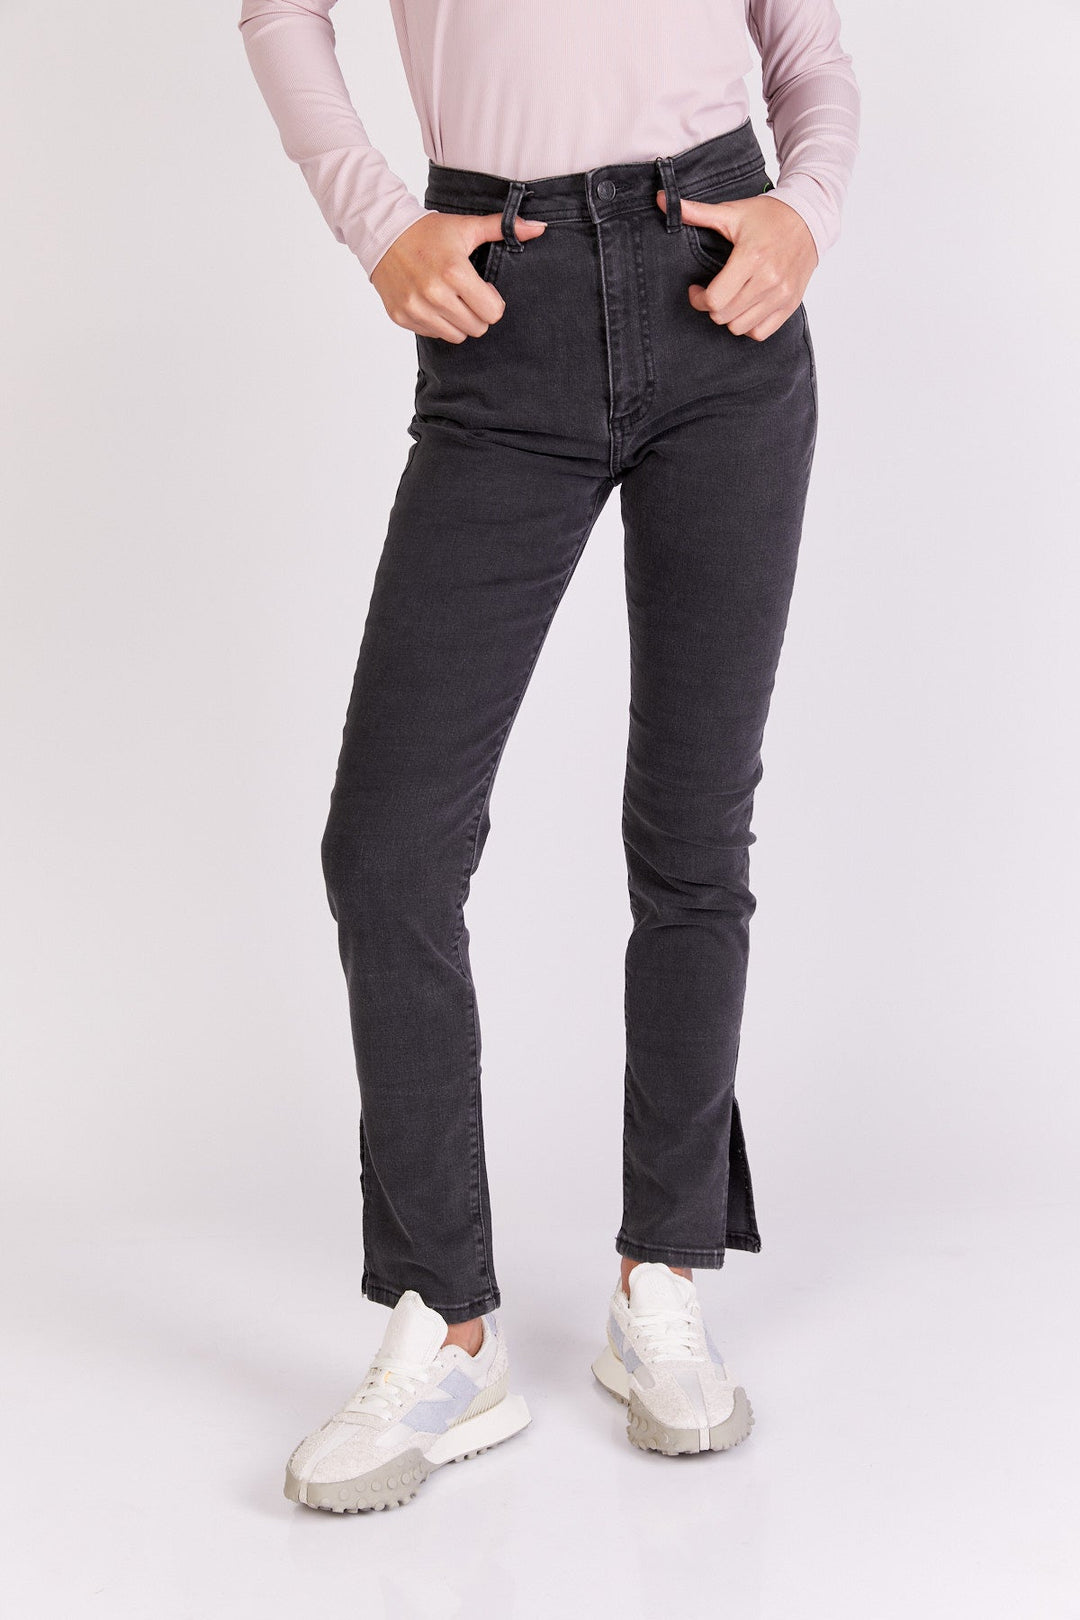 מכנסי ג'ינס גלדלויה בצבע שחור - Razili Studio